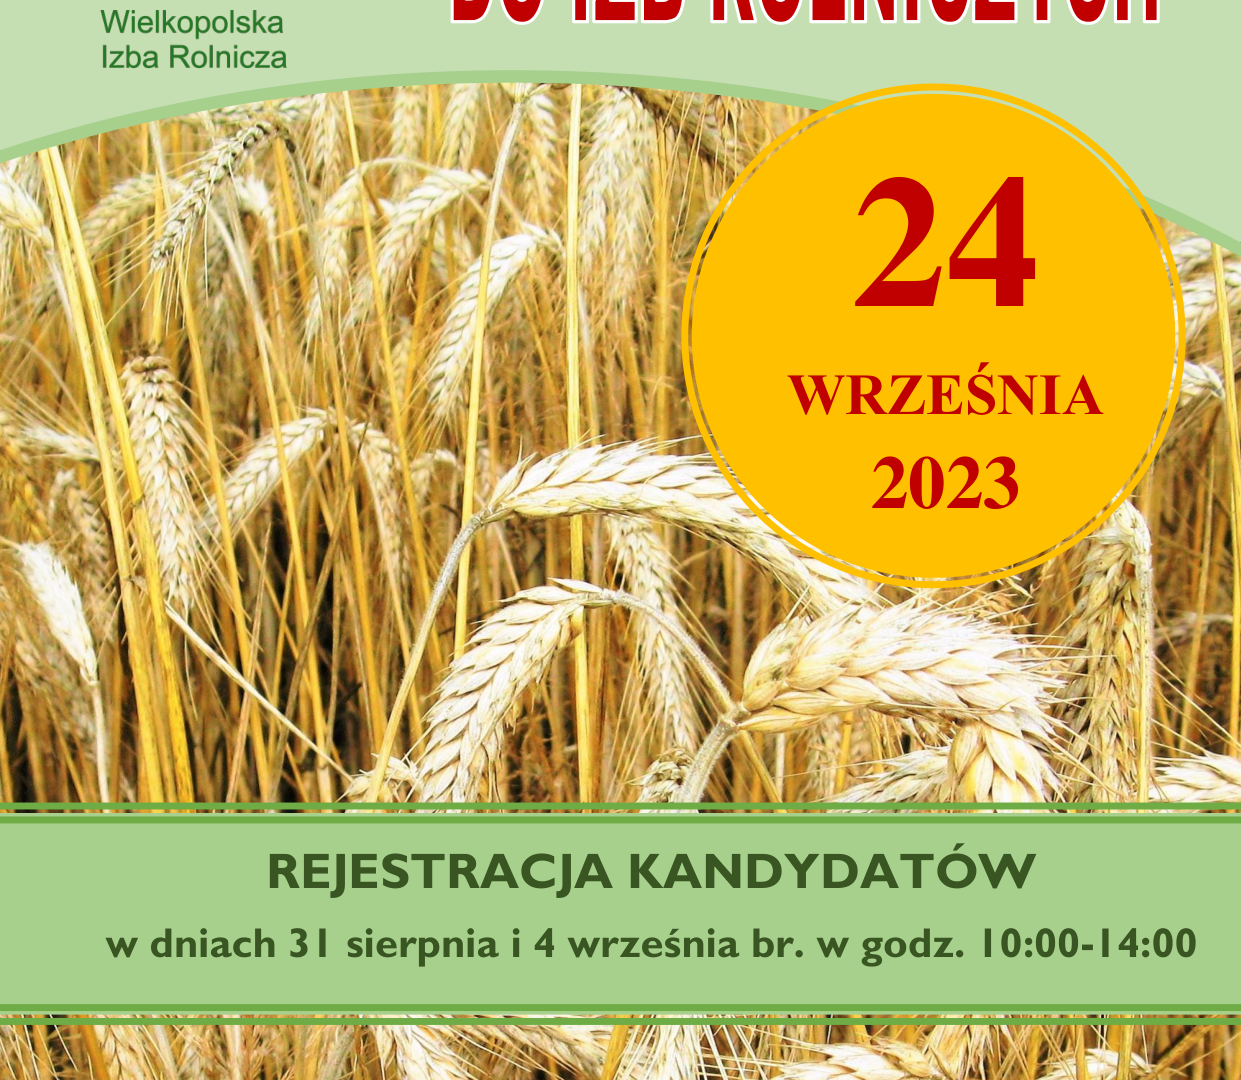 Plakat Wyborów do Izb Rolniczych odbywających się 24 września 2023 roku.